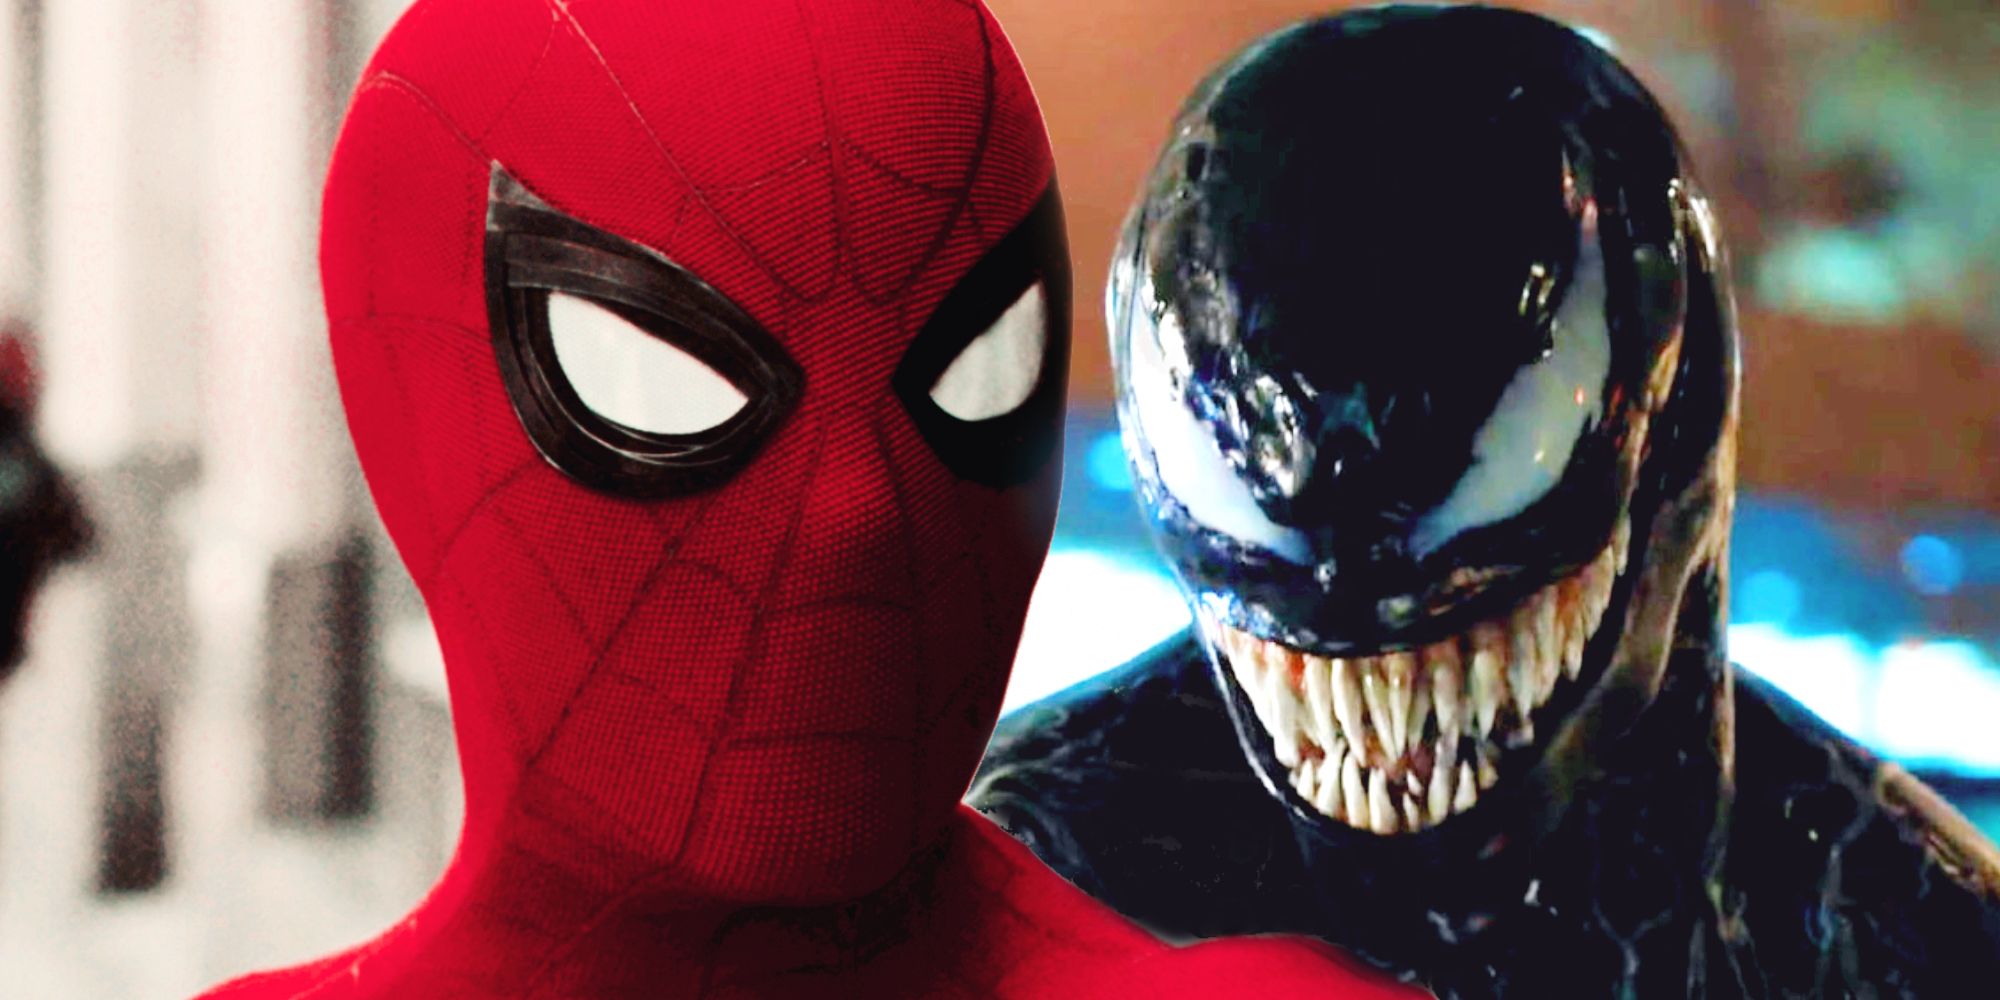 En Venom/Spider-Man Crossover-film ville gå glipp av en stor del av historien deres